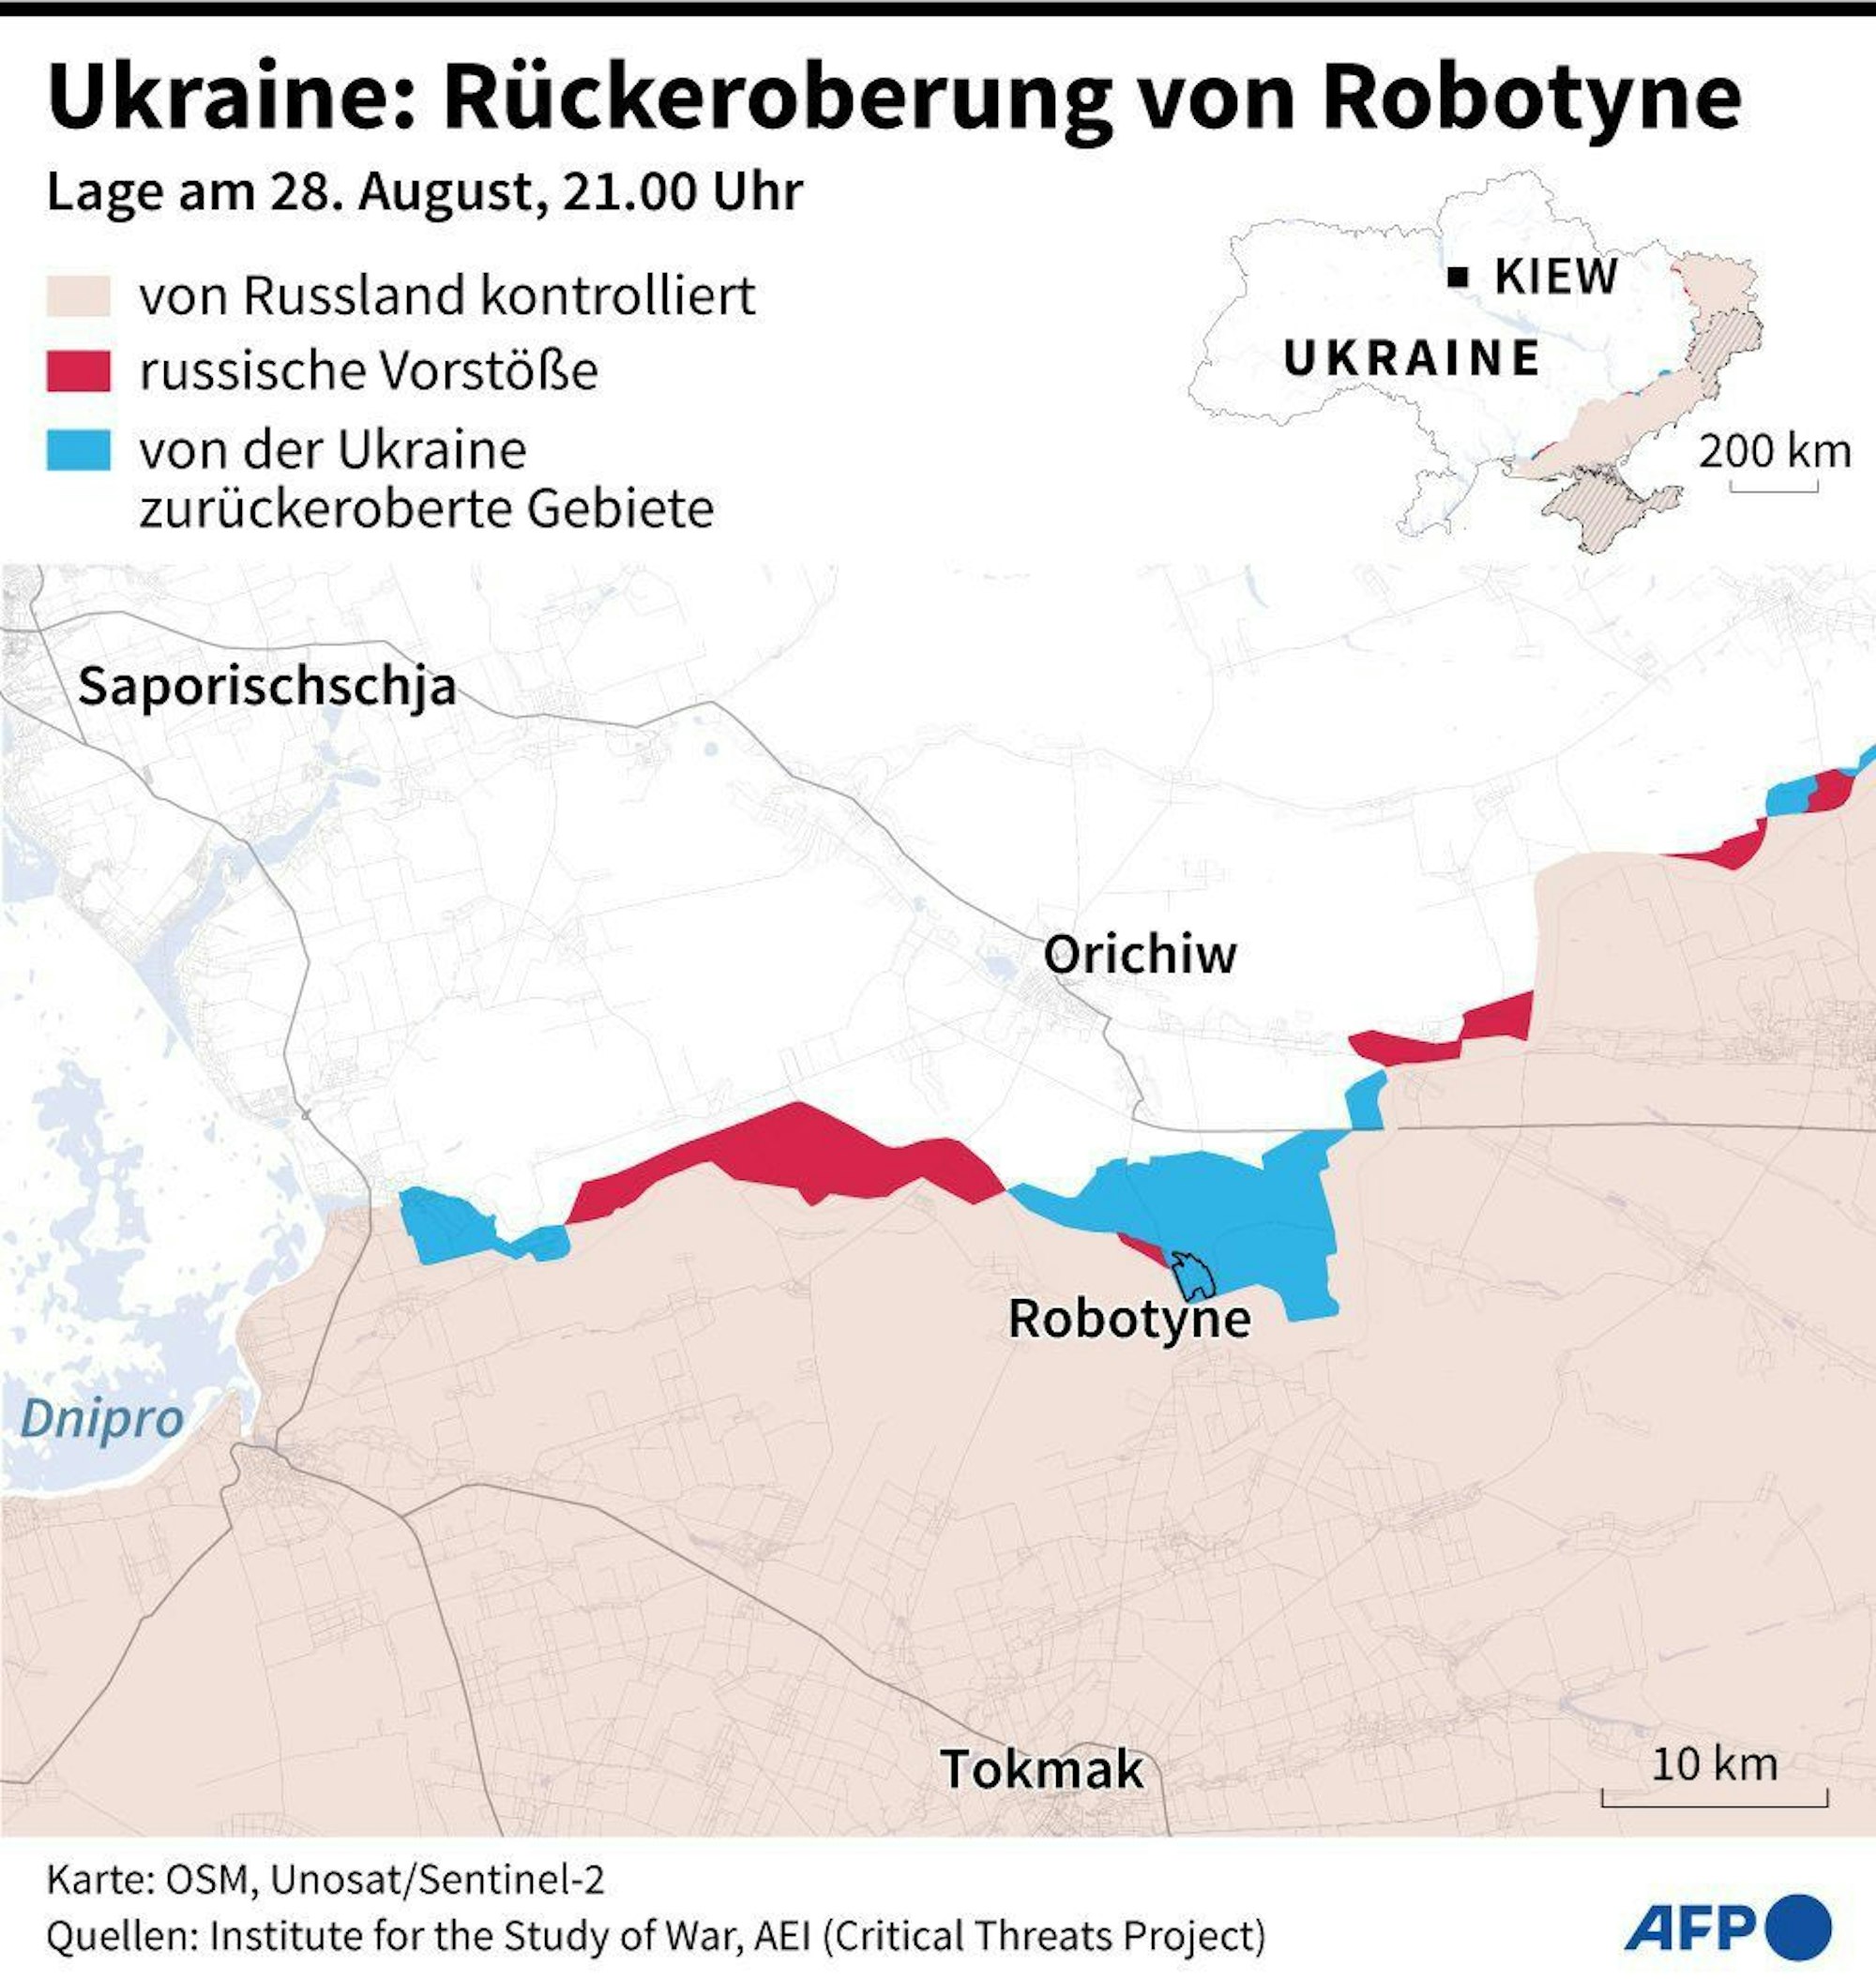 Die Ukraine meldet nach der Rückeroberung von Robotyne weitere Erfolge.